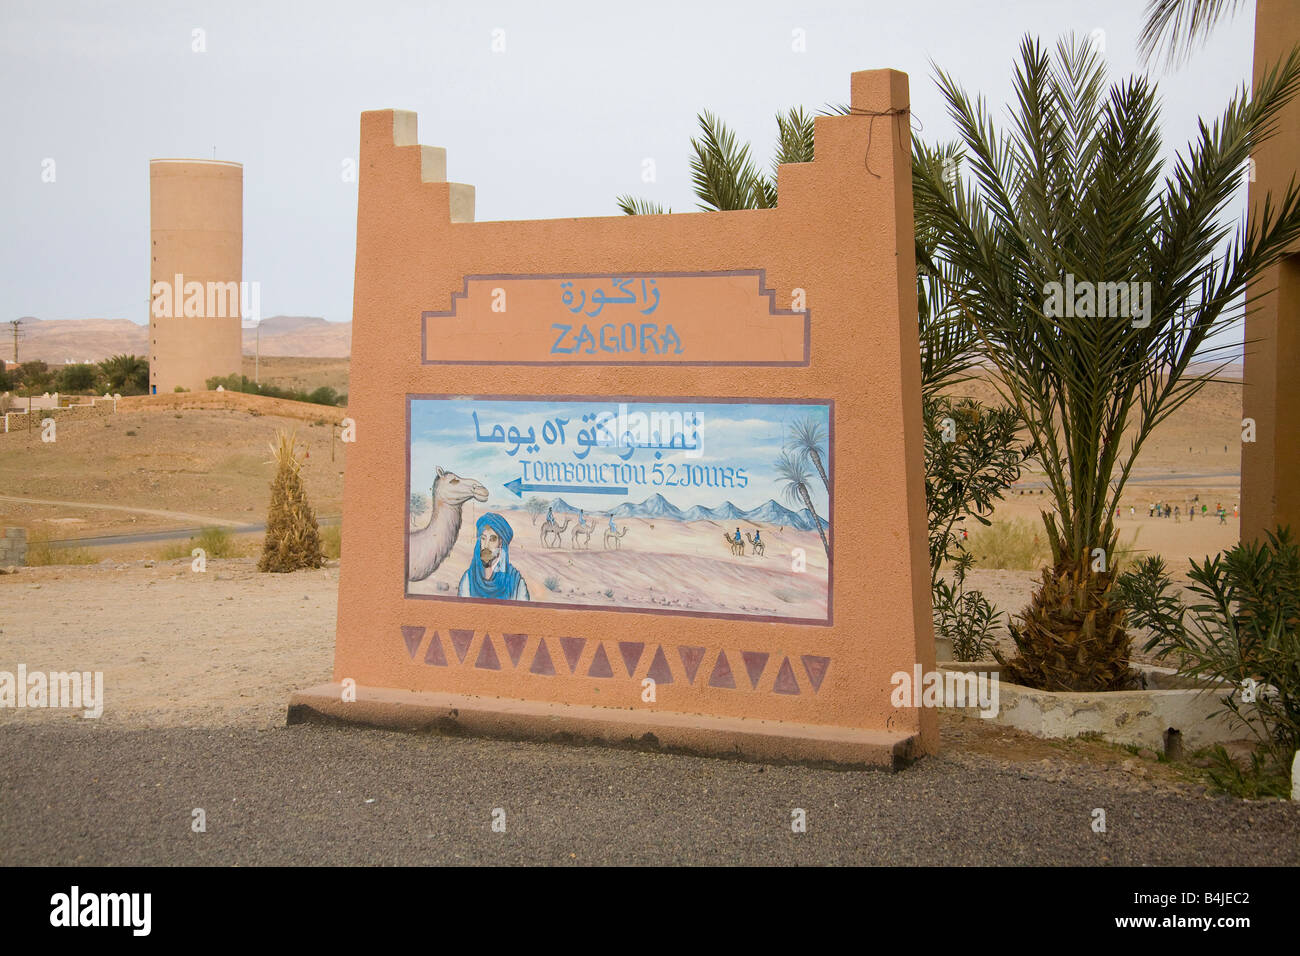 Cartello stradale di Tombouctou 52 Jours attraverso il deserto da cammello Timbuctù 52 giorni Zagora Marocco.orizzontale.89903 Marocco Foto Stock